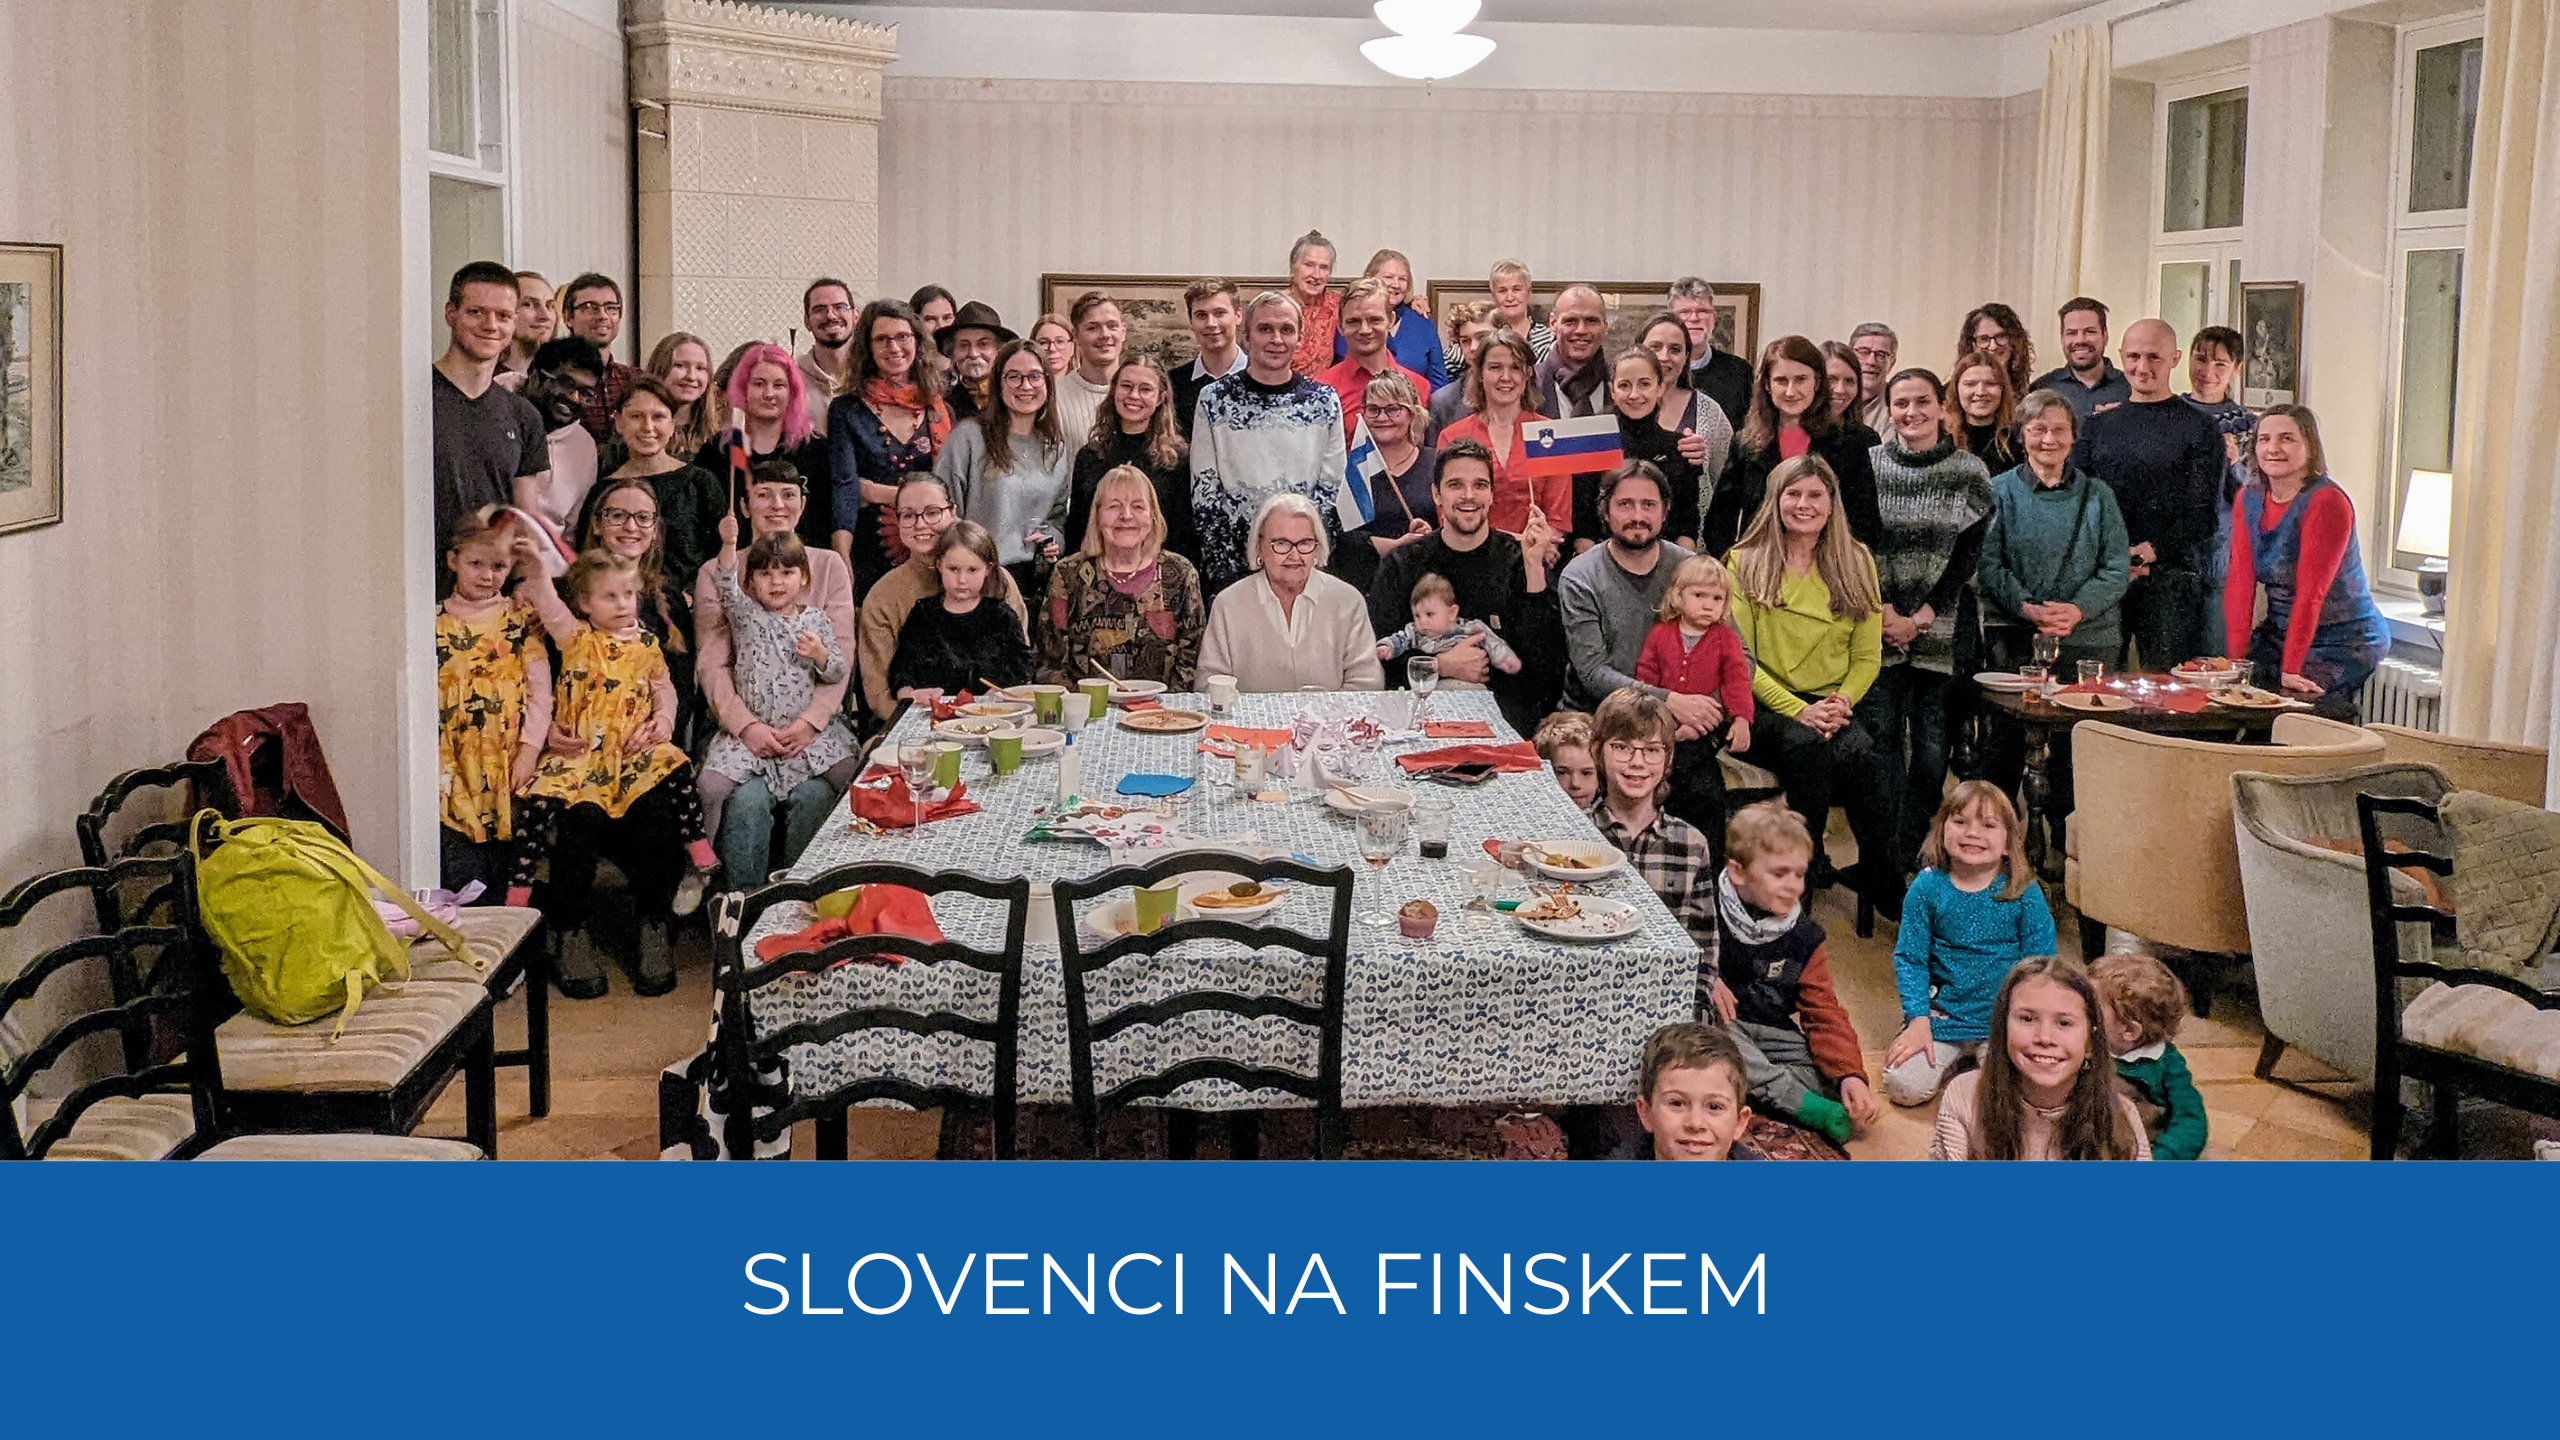 Skupinska slika Slovencev na Finskem pred obloženo mizo